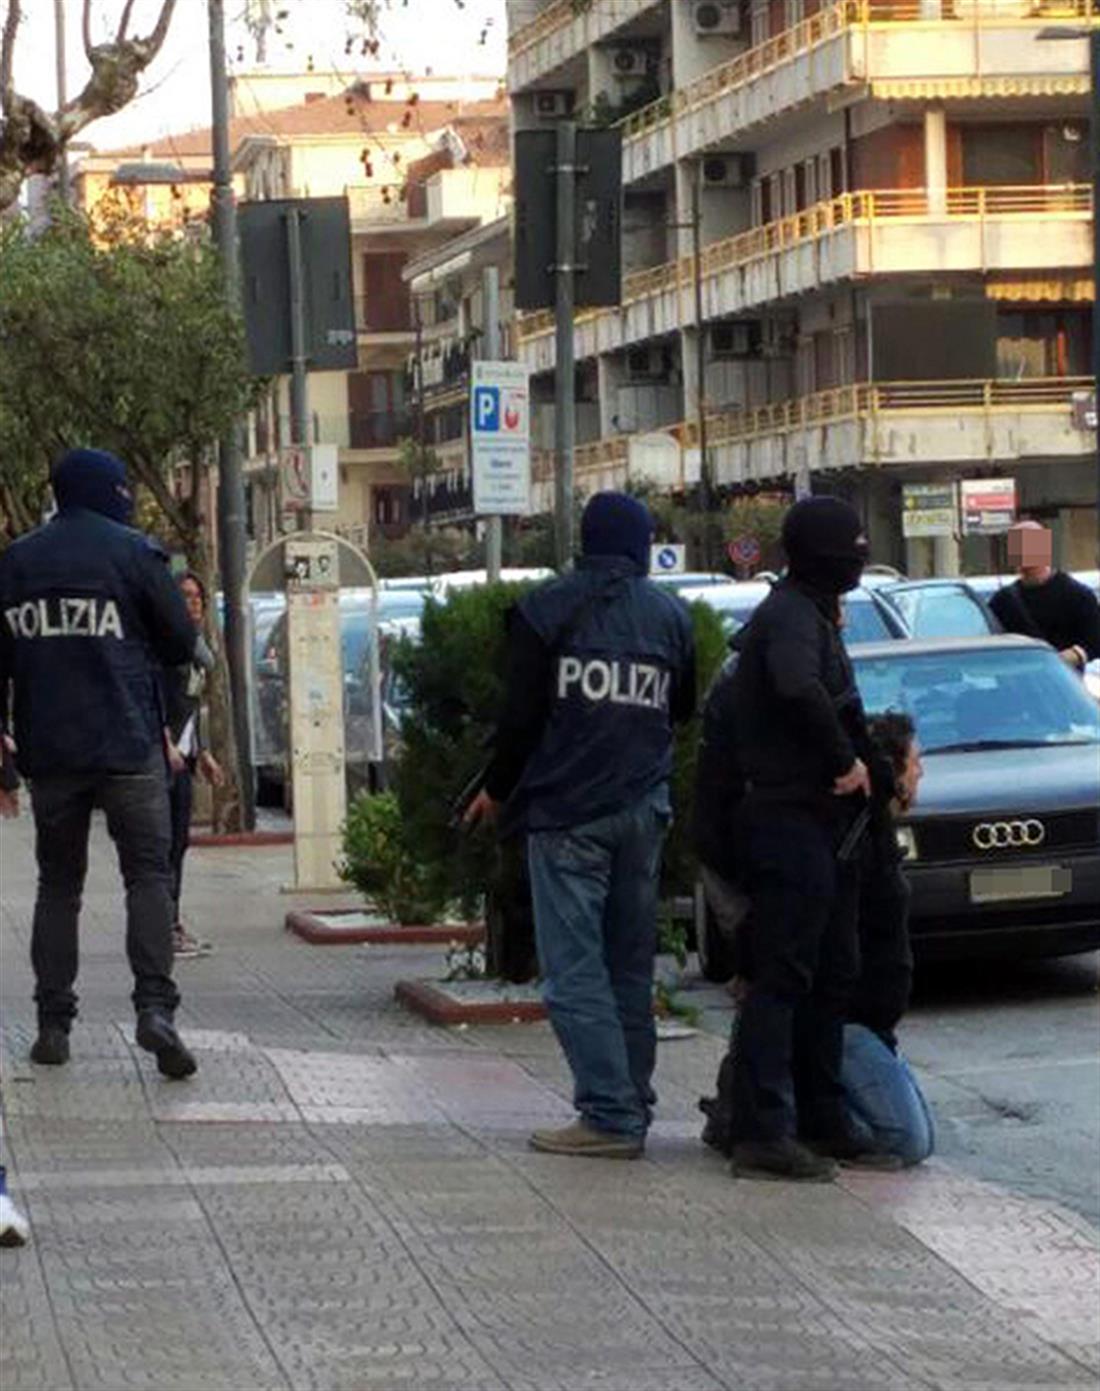 Ιταλία - αστυνομία - σύλληψη - ύποπτος - επιθέσεις - τρομοκρατία - Παρίσι - Βρυξέλλες